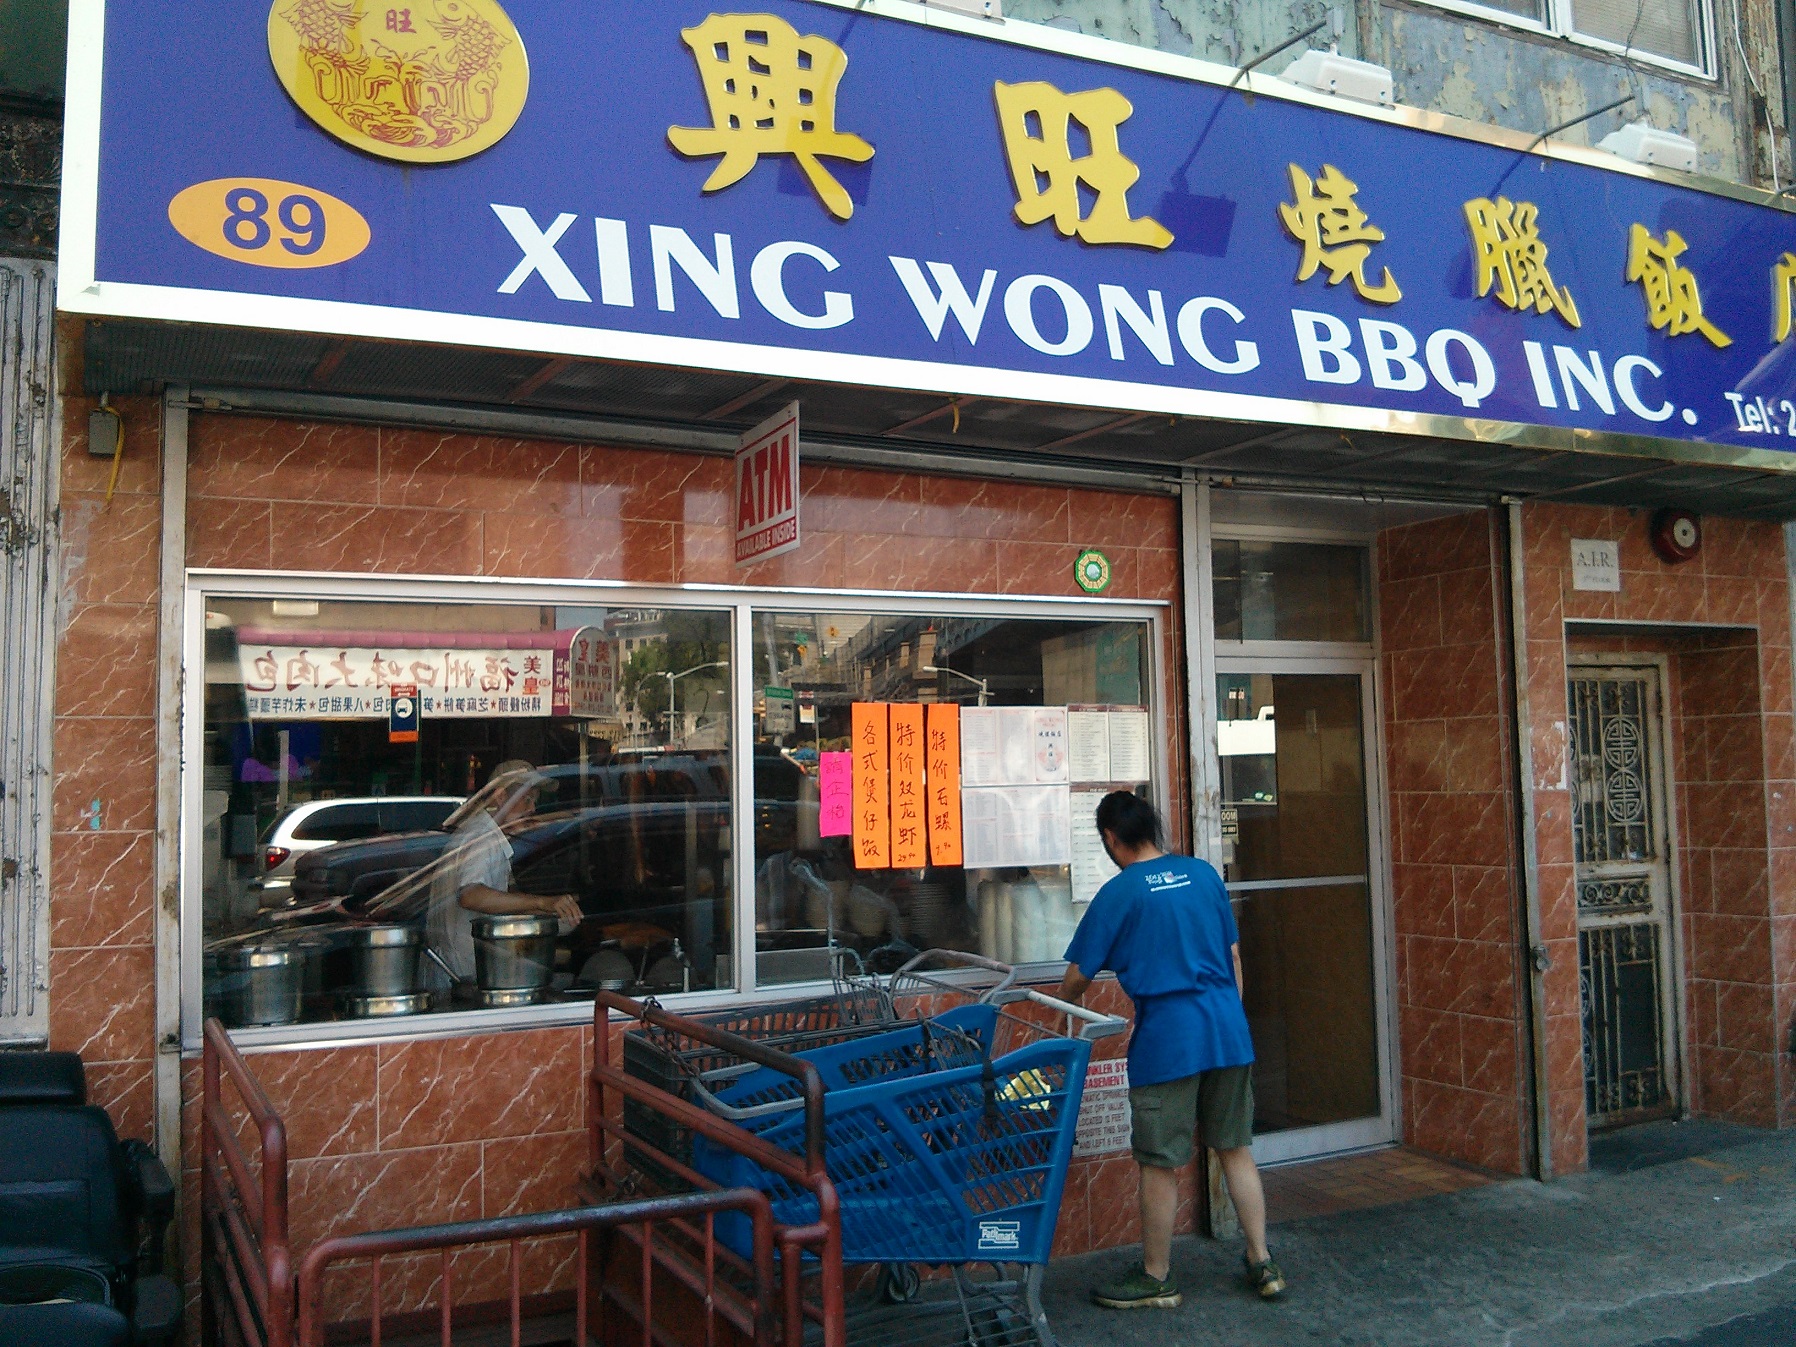 Xing Wong BBQ Inc. exterior